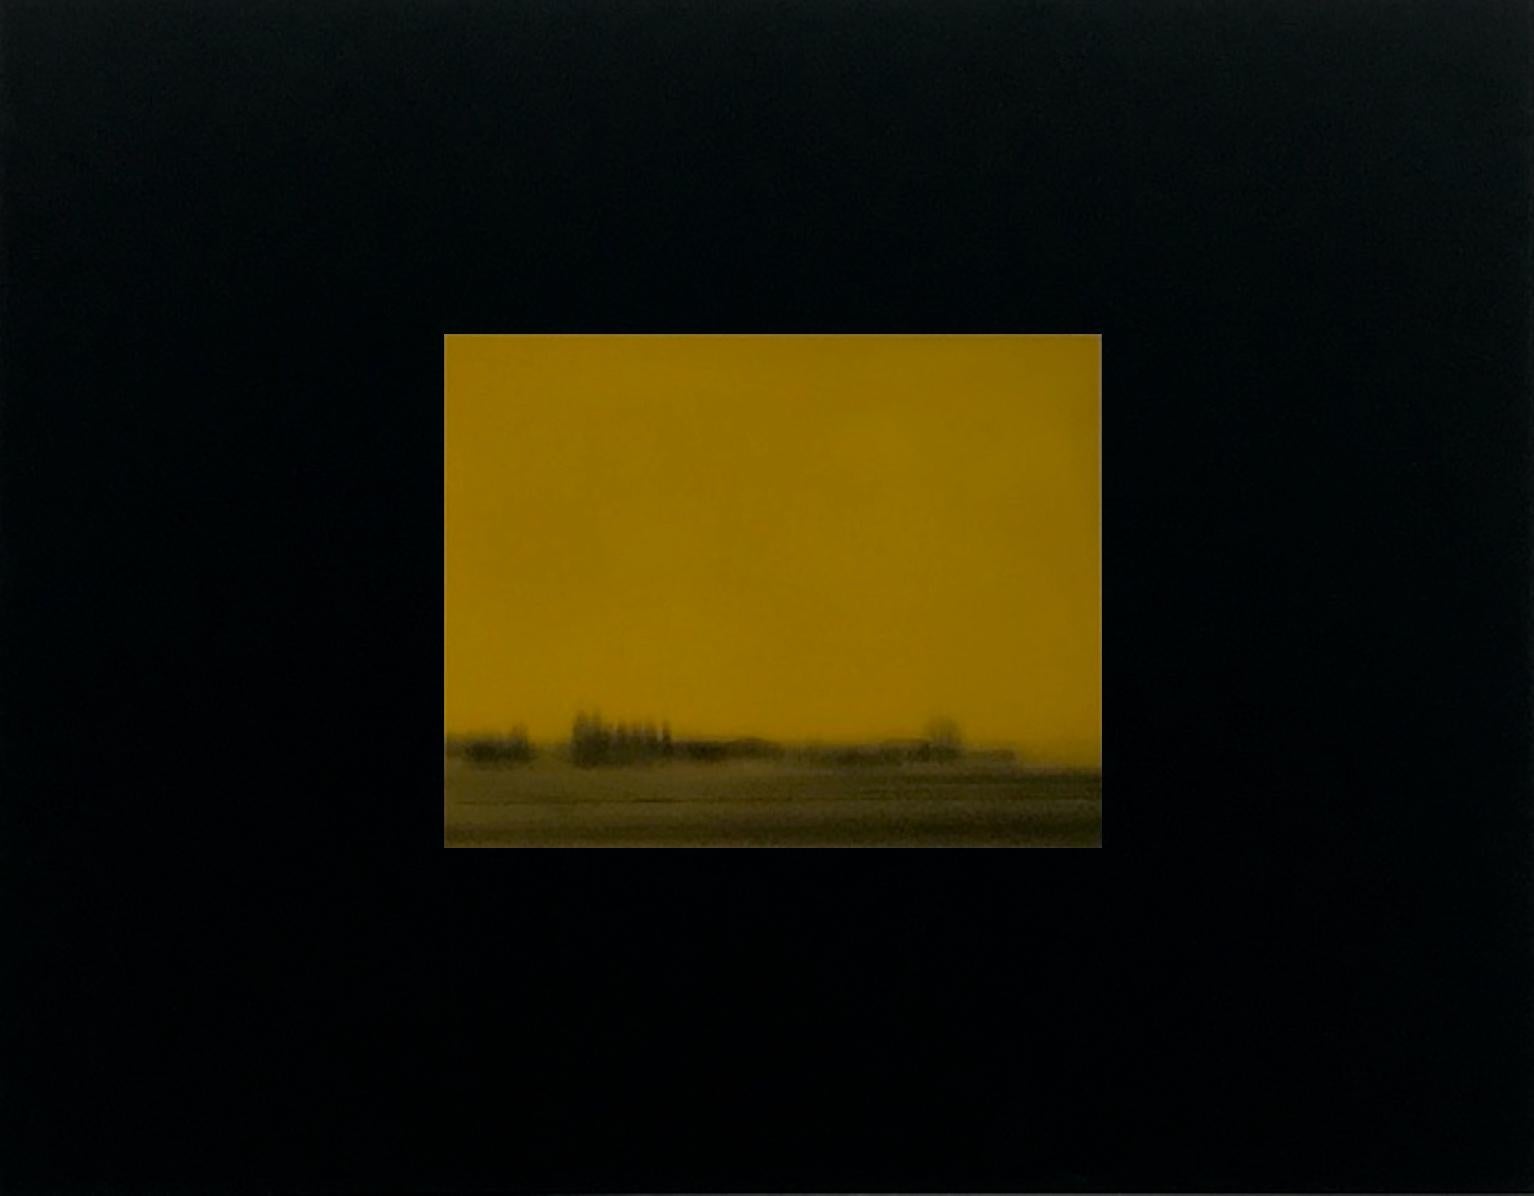 Landscape Photograph Davide Maria Coltro - Paysage en couleur, 2006